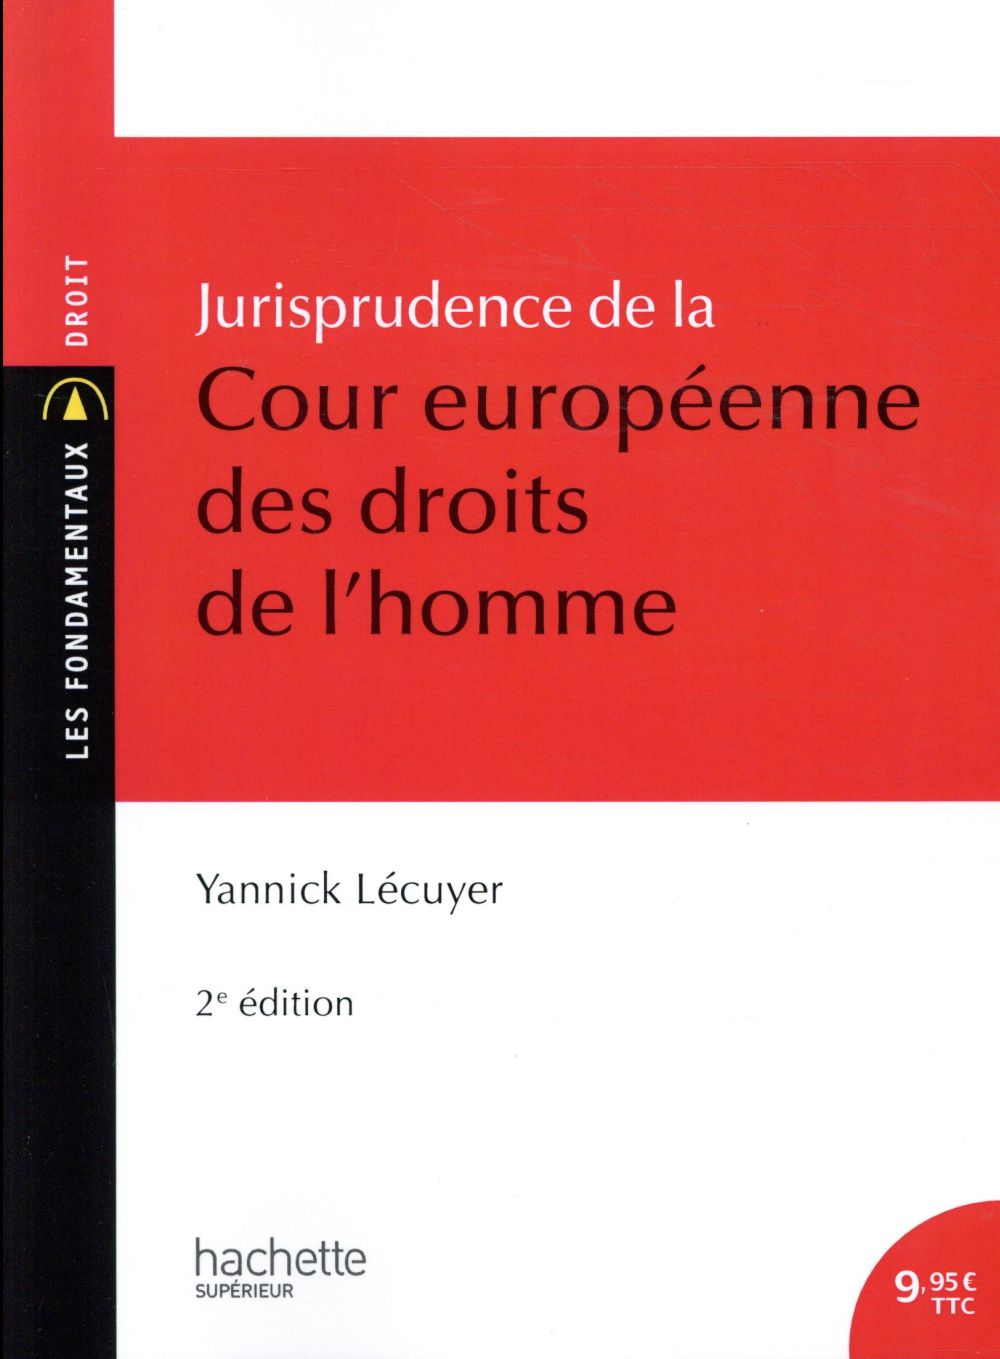 JURISPRUDENCE DE LA COUR EUROPEENNE DES DROITS DE L'HOMME